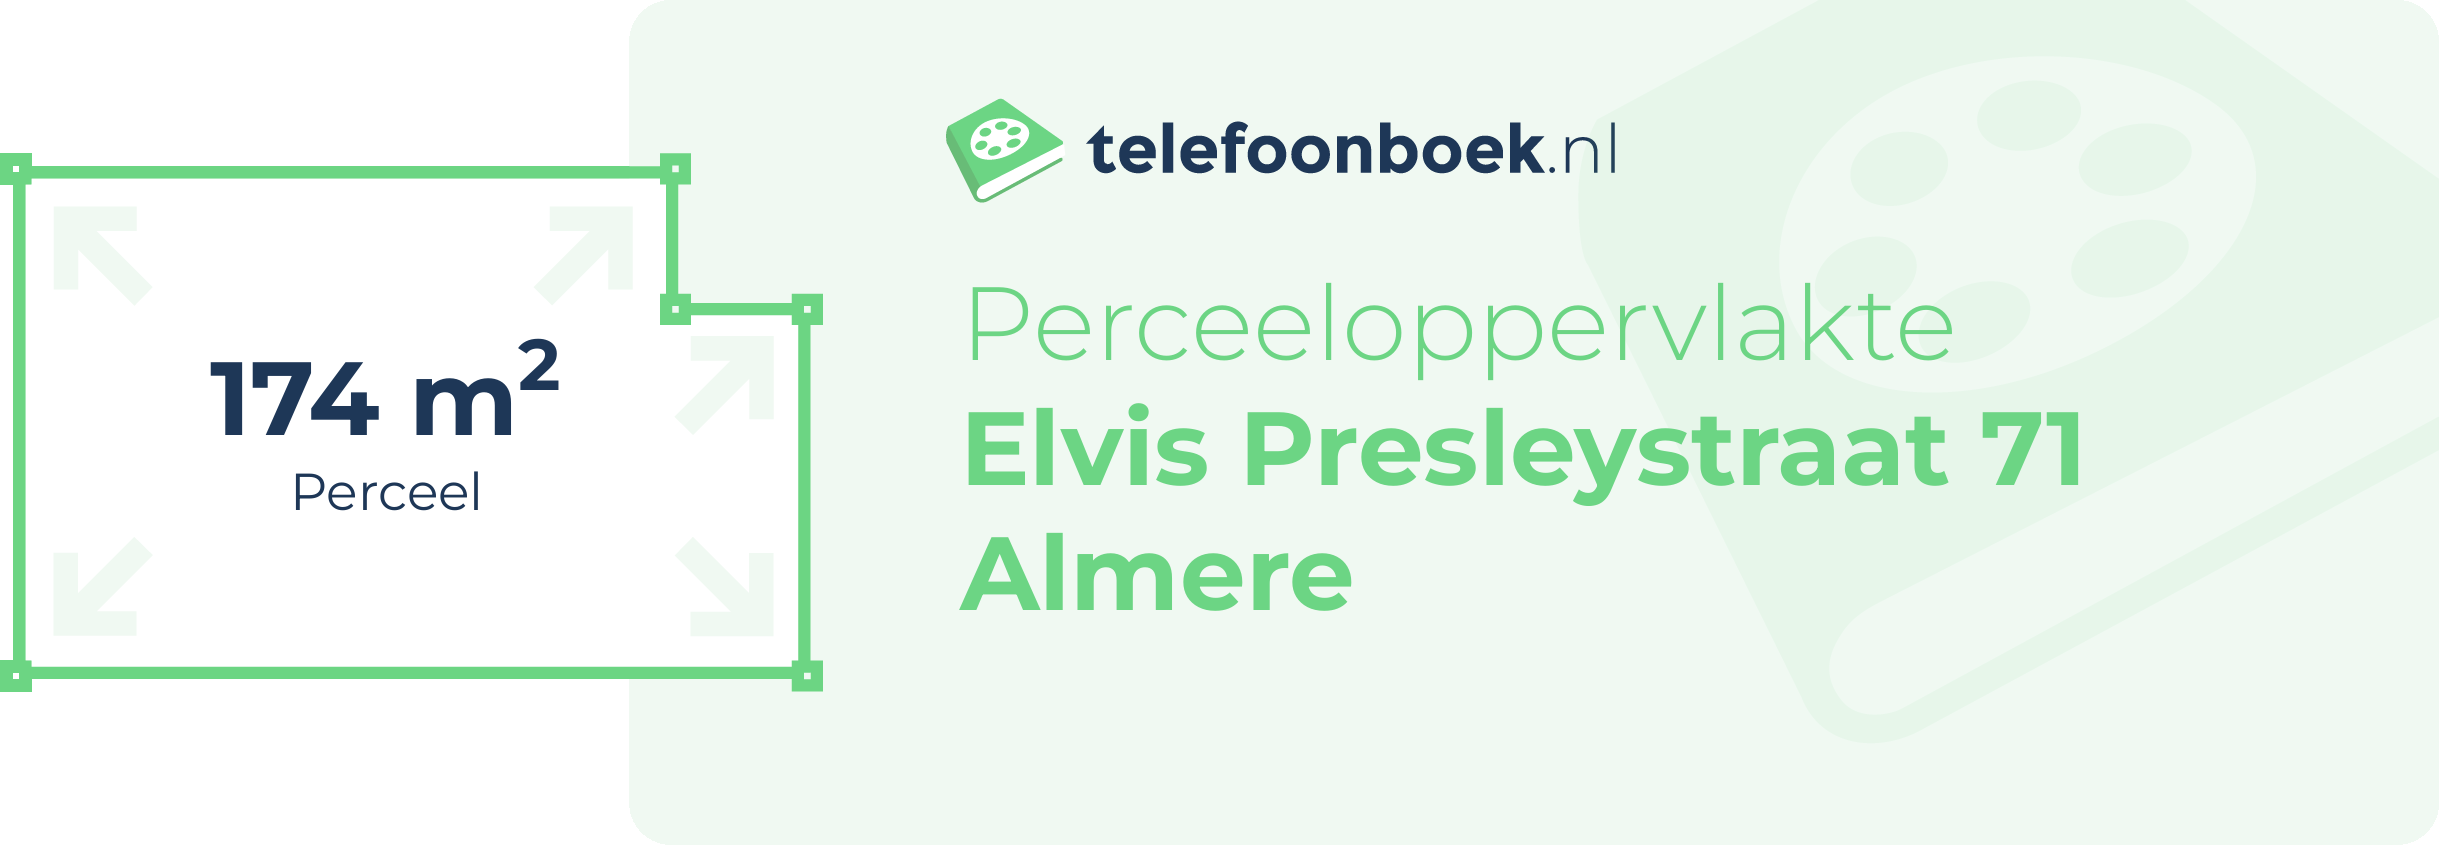 Perceeloppervlakte Elvis Presleystraat 71 Almere